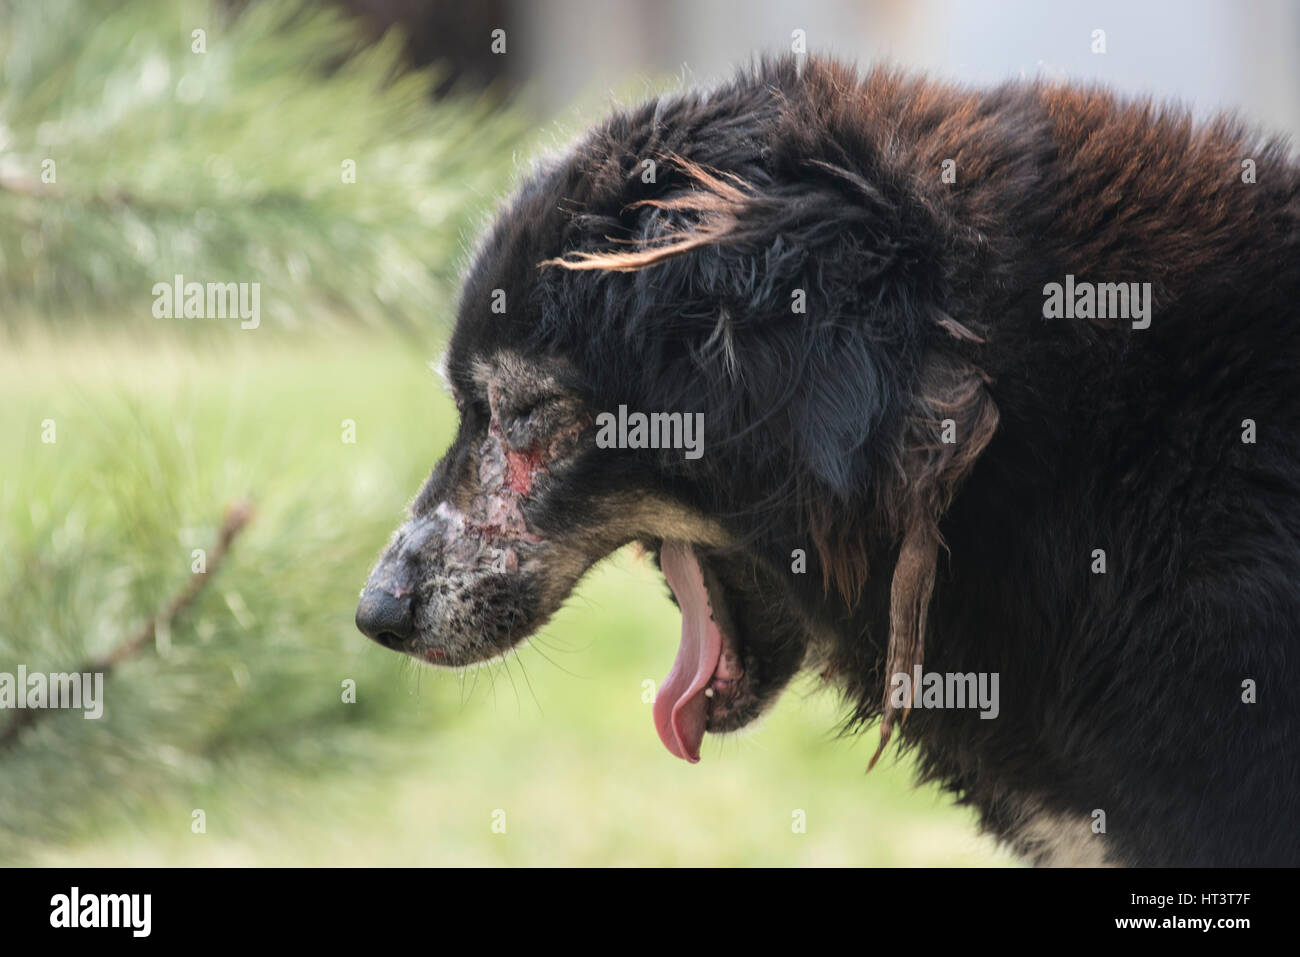 Hund krank mit Räude / Krätze Stockfotografie - Alamy